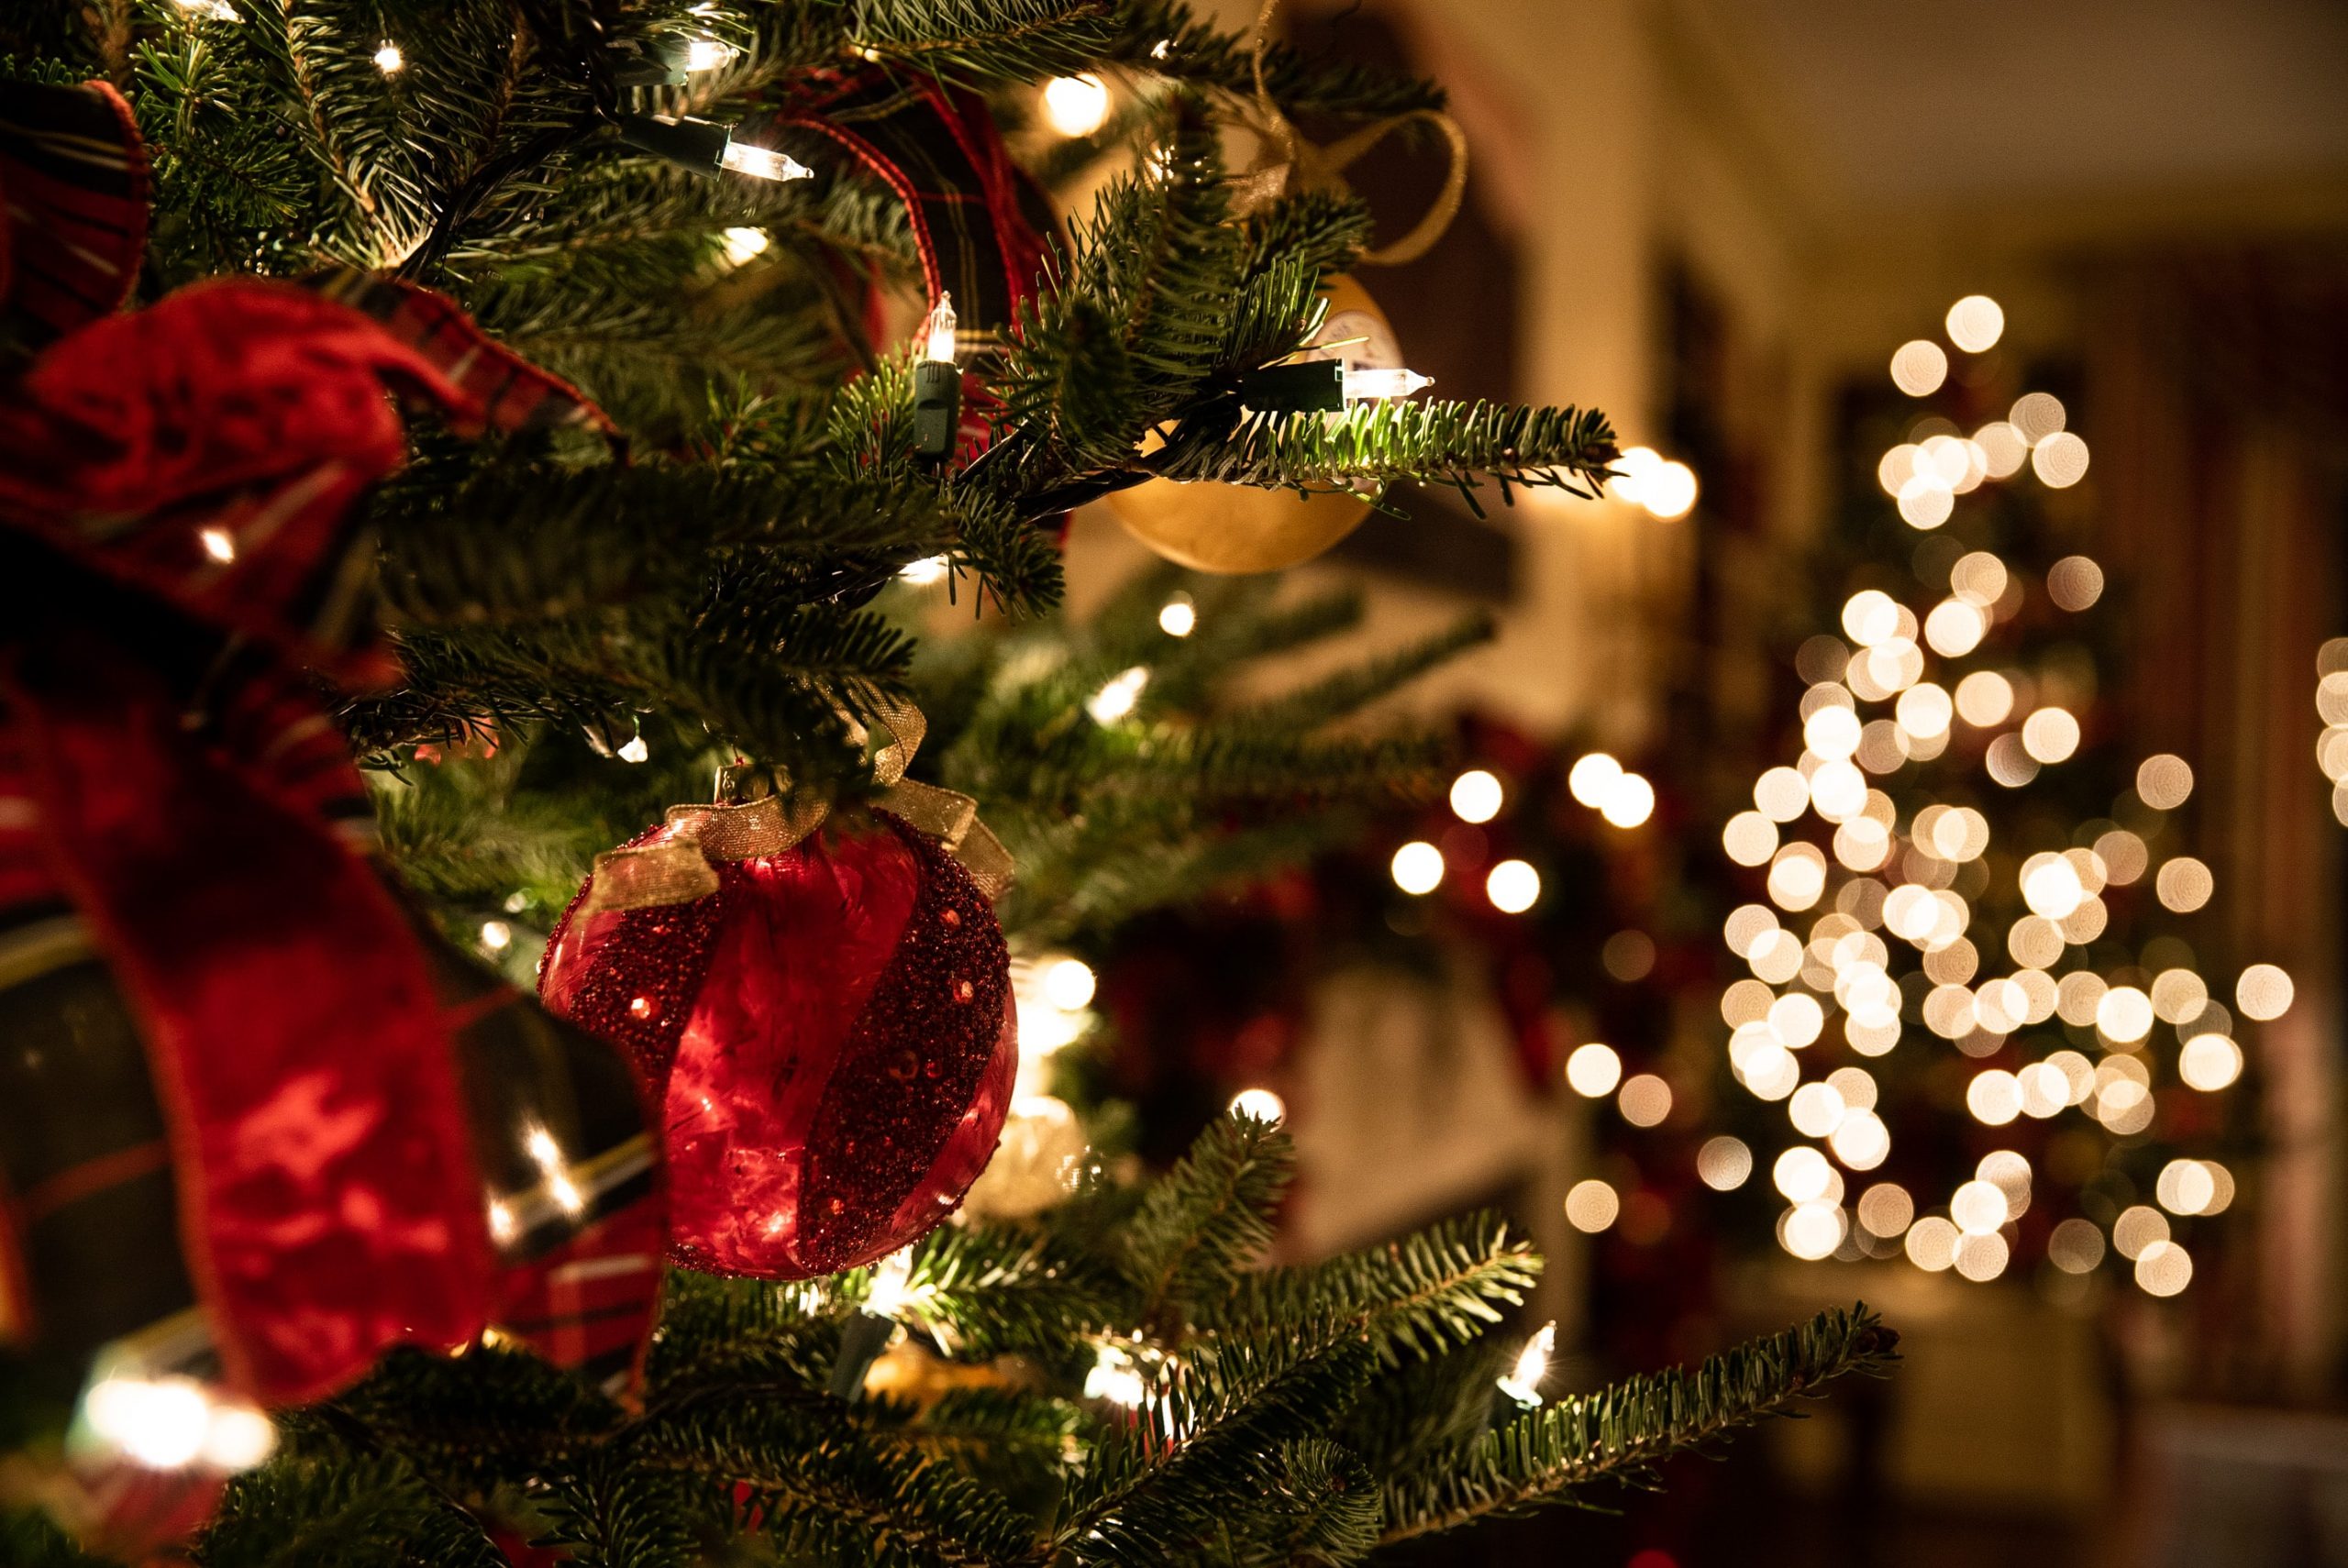 Weihnachtsbaum und im Hintergrund ist der Weihnachtsbaum mit Lichtern im Bokeh zu erkennen.